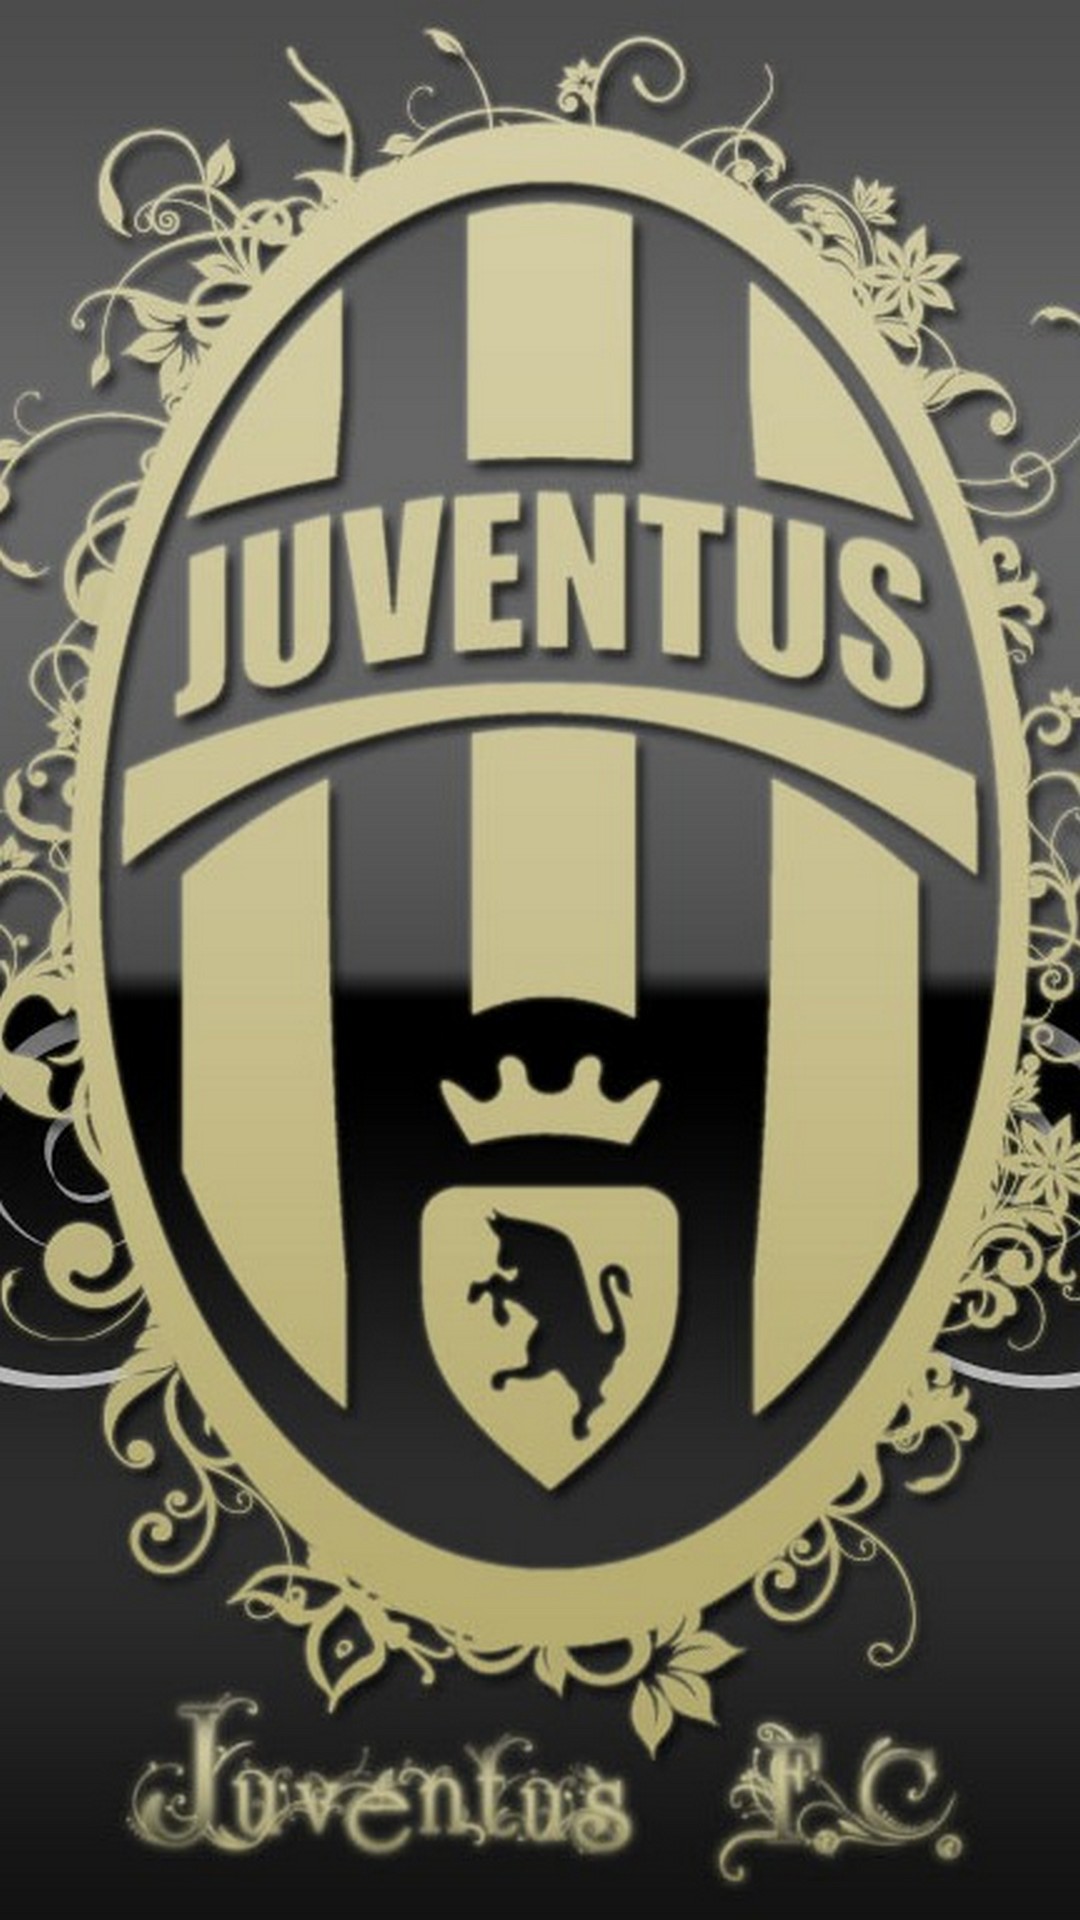 Juventus Logo iPhone Wallpaper Hd resolution 1080x1920